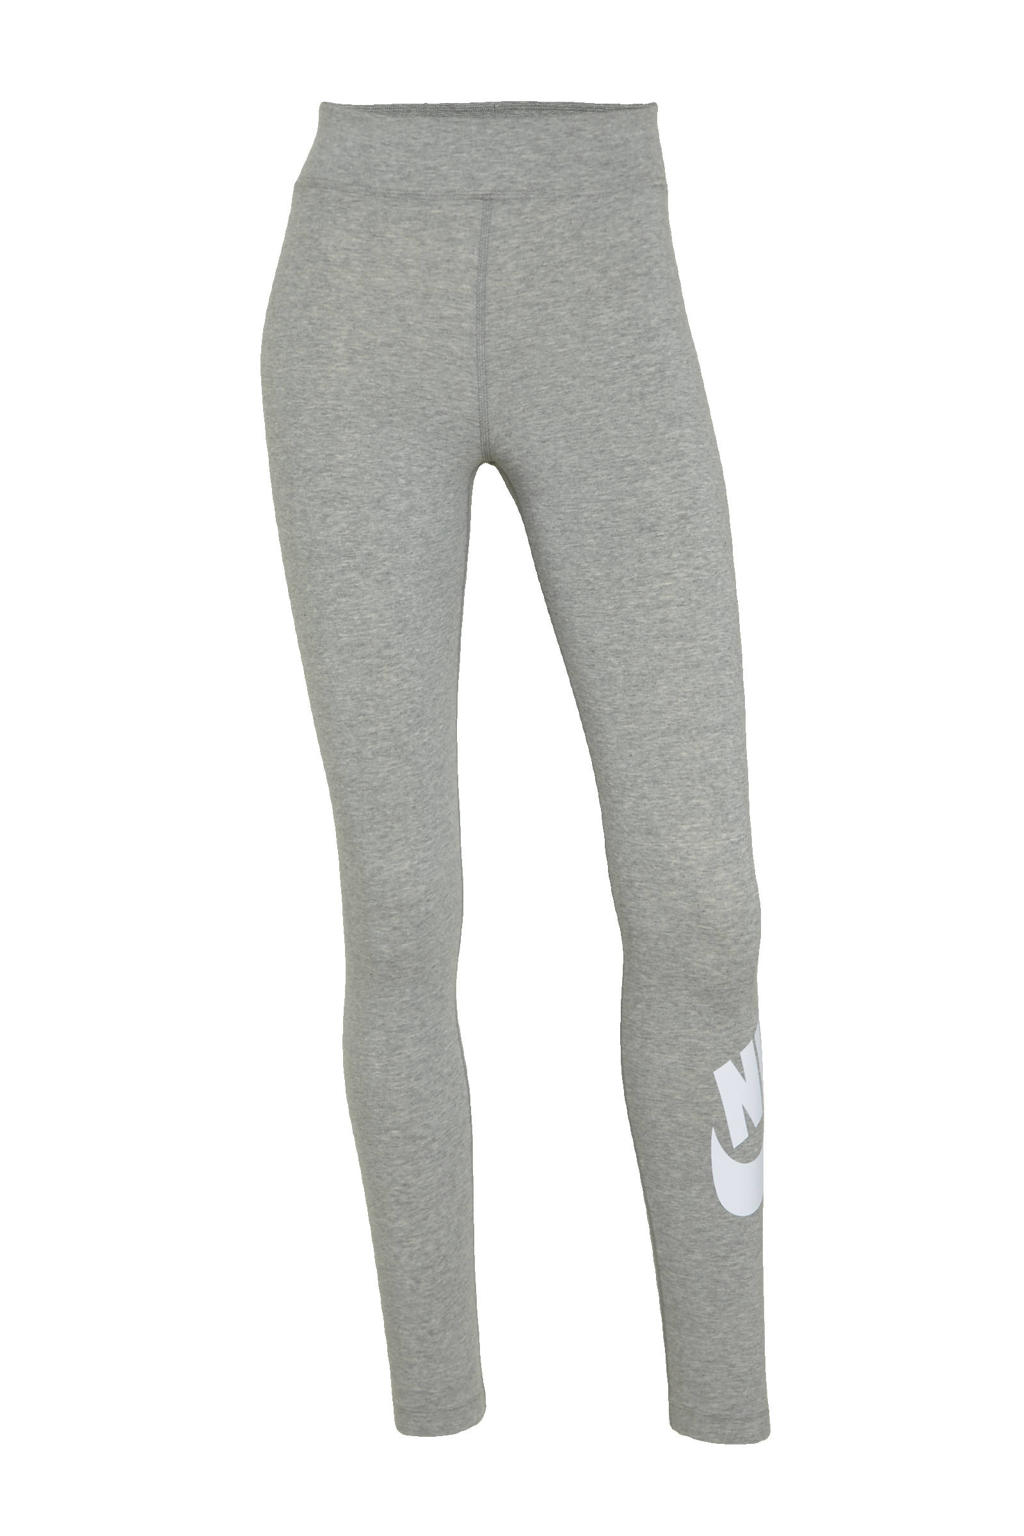 Grijs en witte dames Nike legging van katoen met slim fit, high waist, elastische tailleband en logo dessin